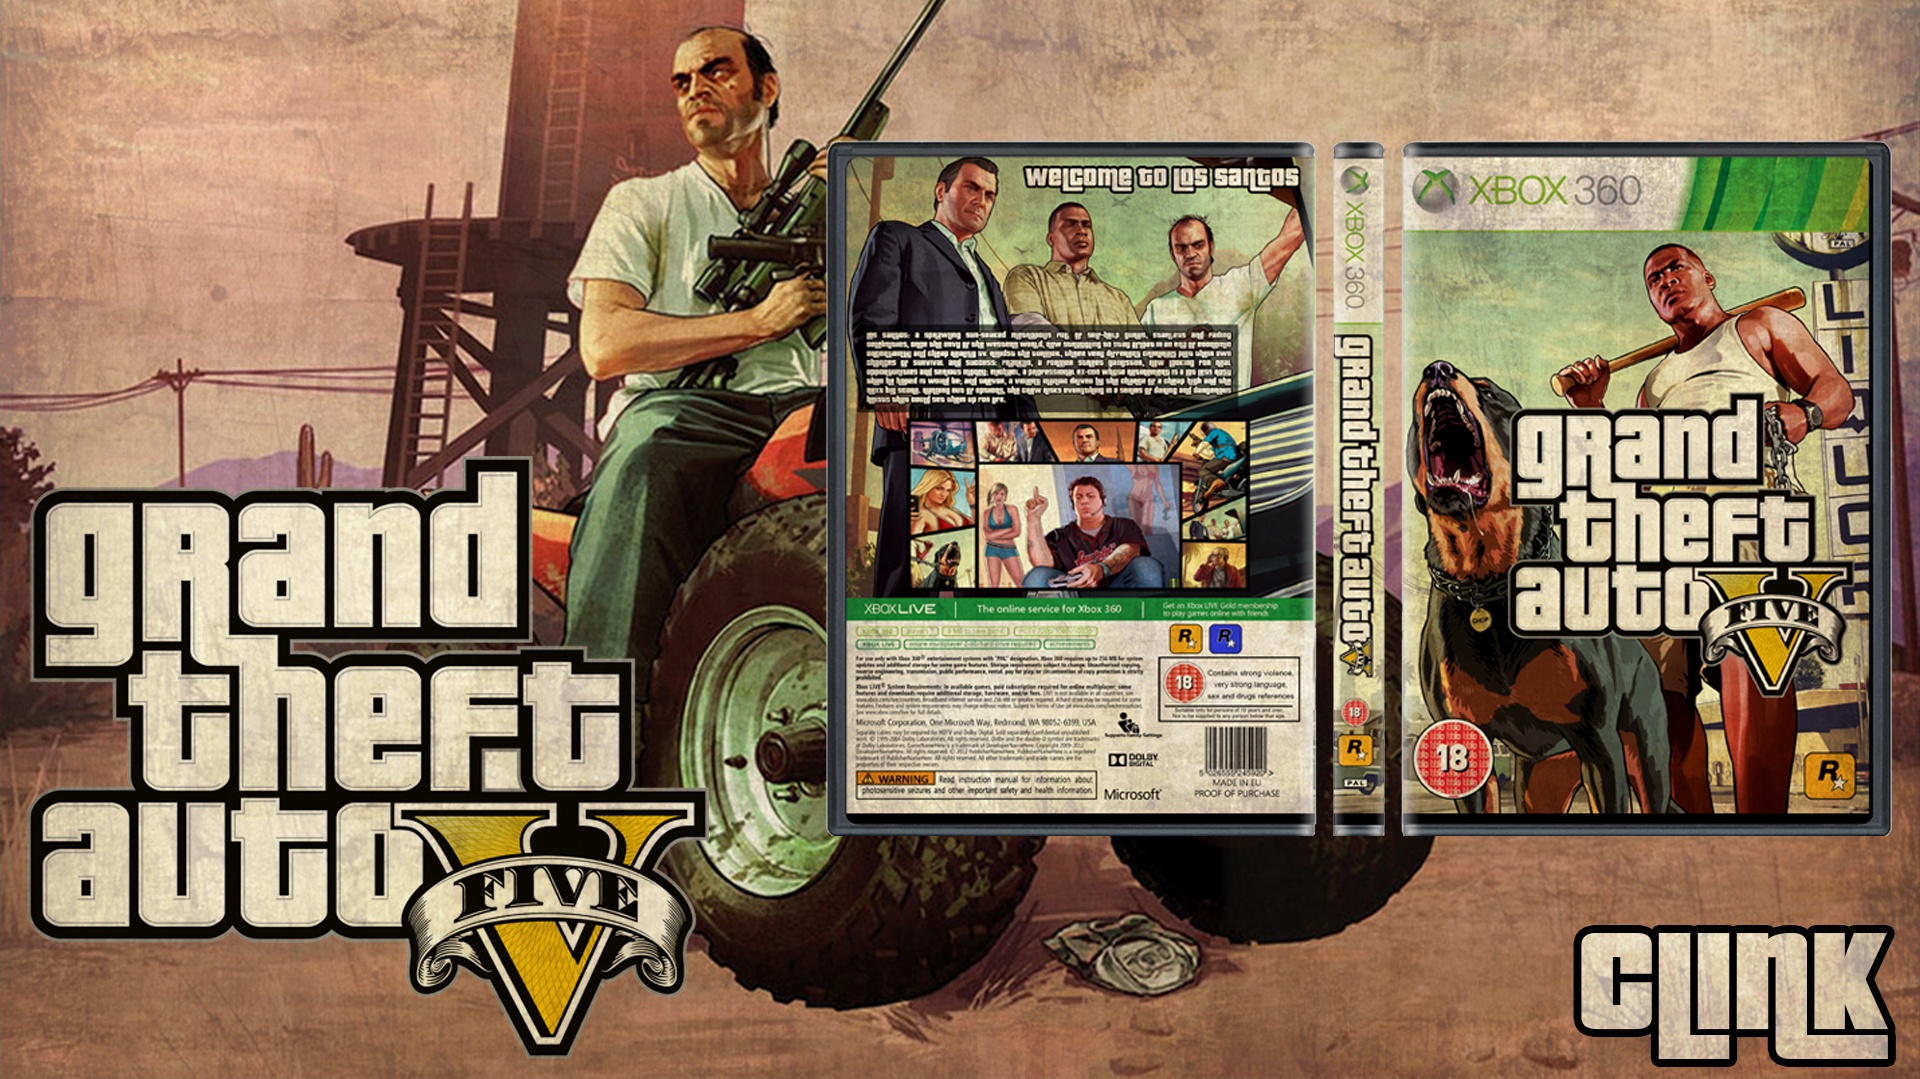 Игра бокс гта 5. GTA 5 Xbox 360 обложка. Grand Theft auto v обложка Xbox 360. GTA 5 Xbox 360 Cover. Xbox 360 обложка игры Grand Theft auto 5.